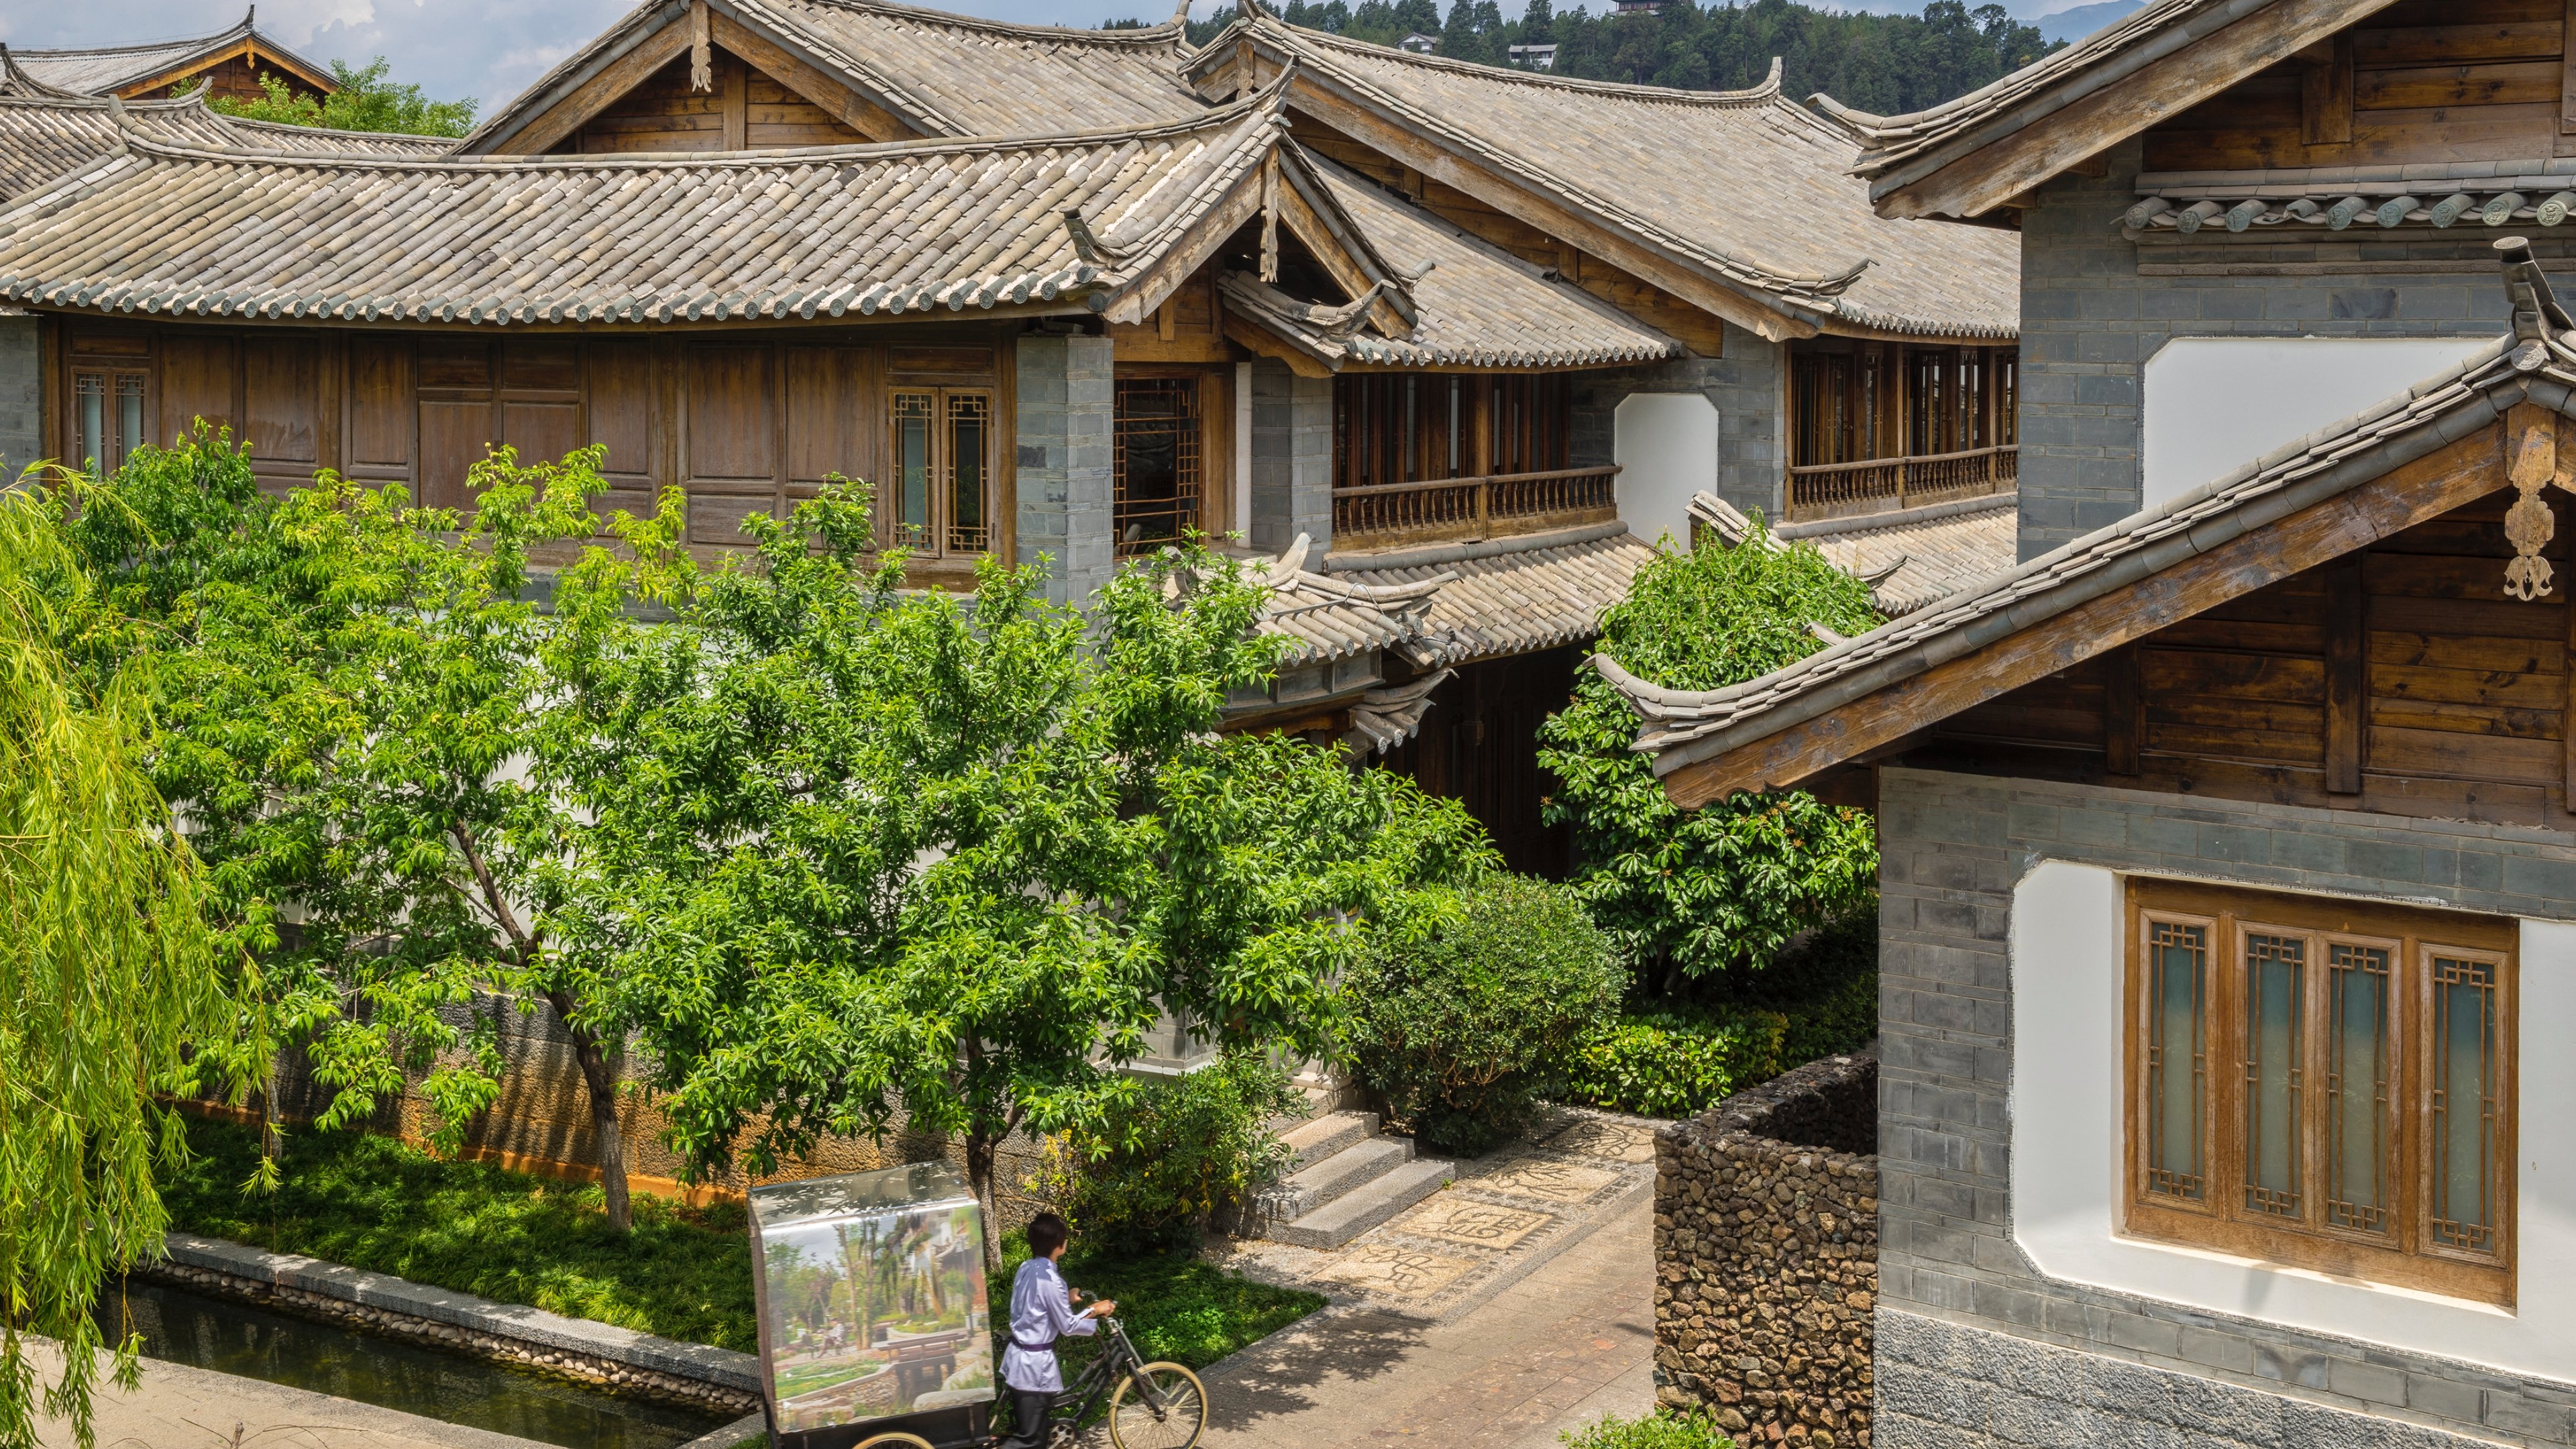 InterContinental Lijiang Ancient Town Resort image